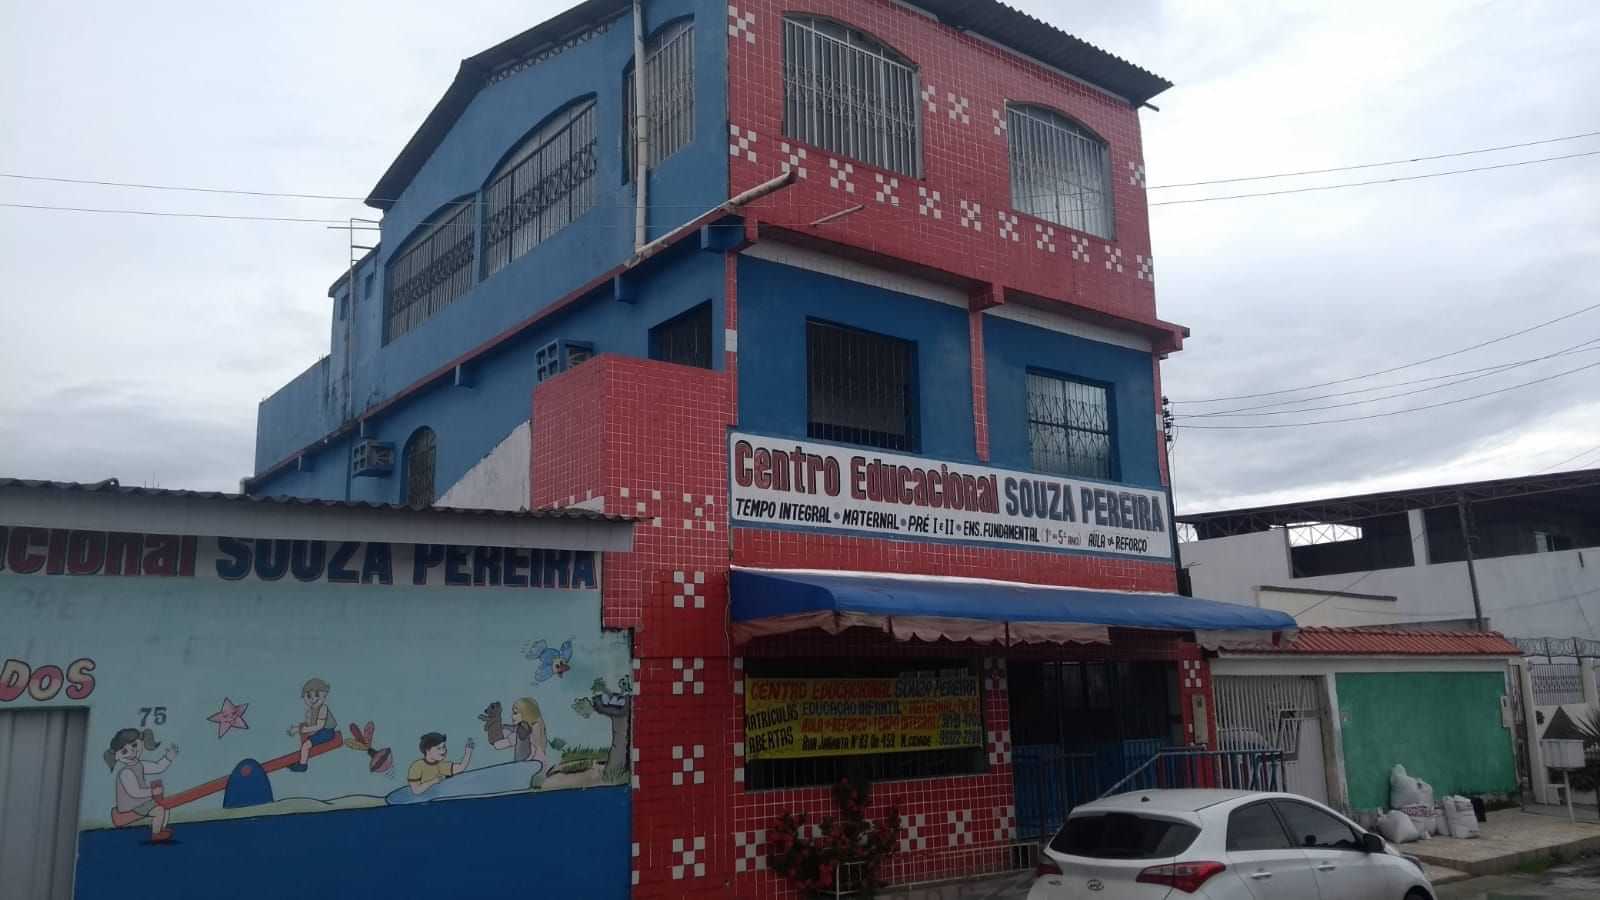  Centro Educacional Souza Pereira Cesp 